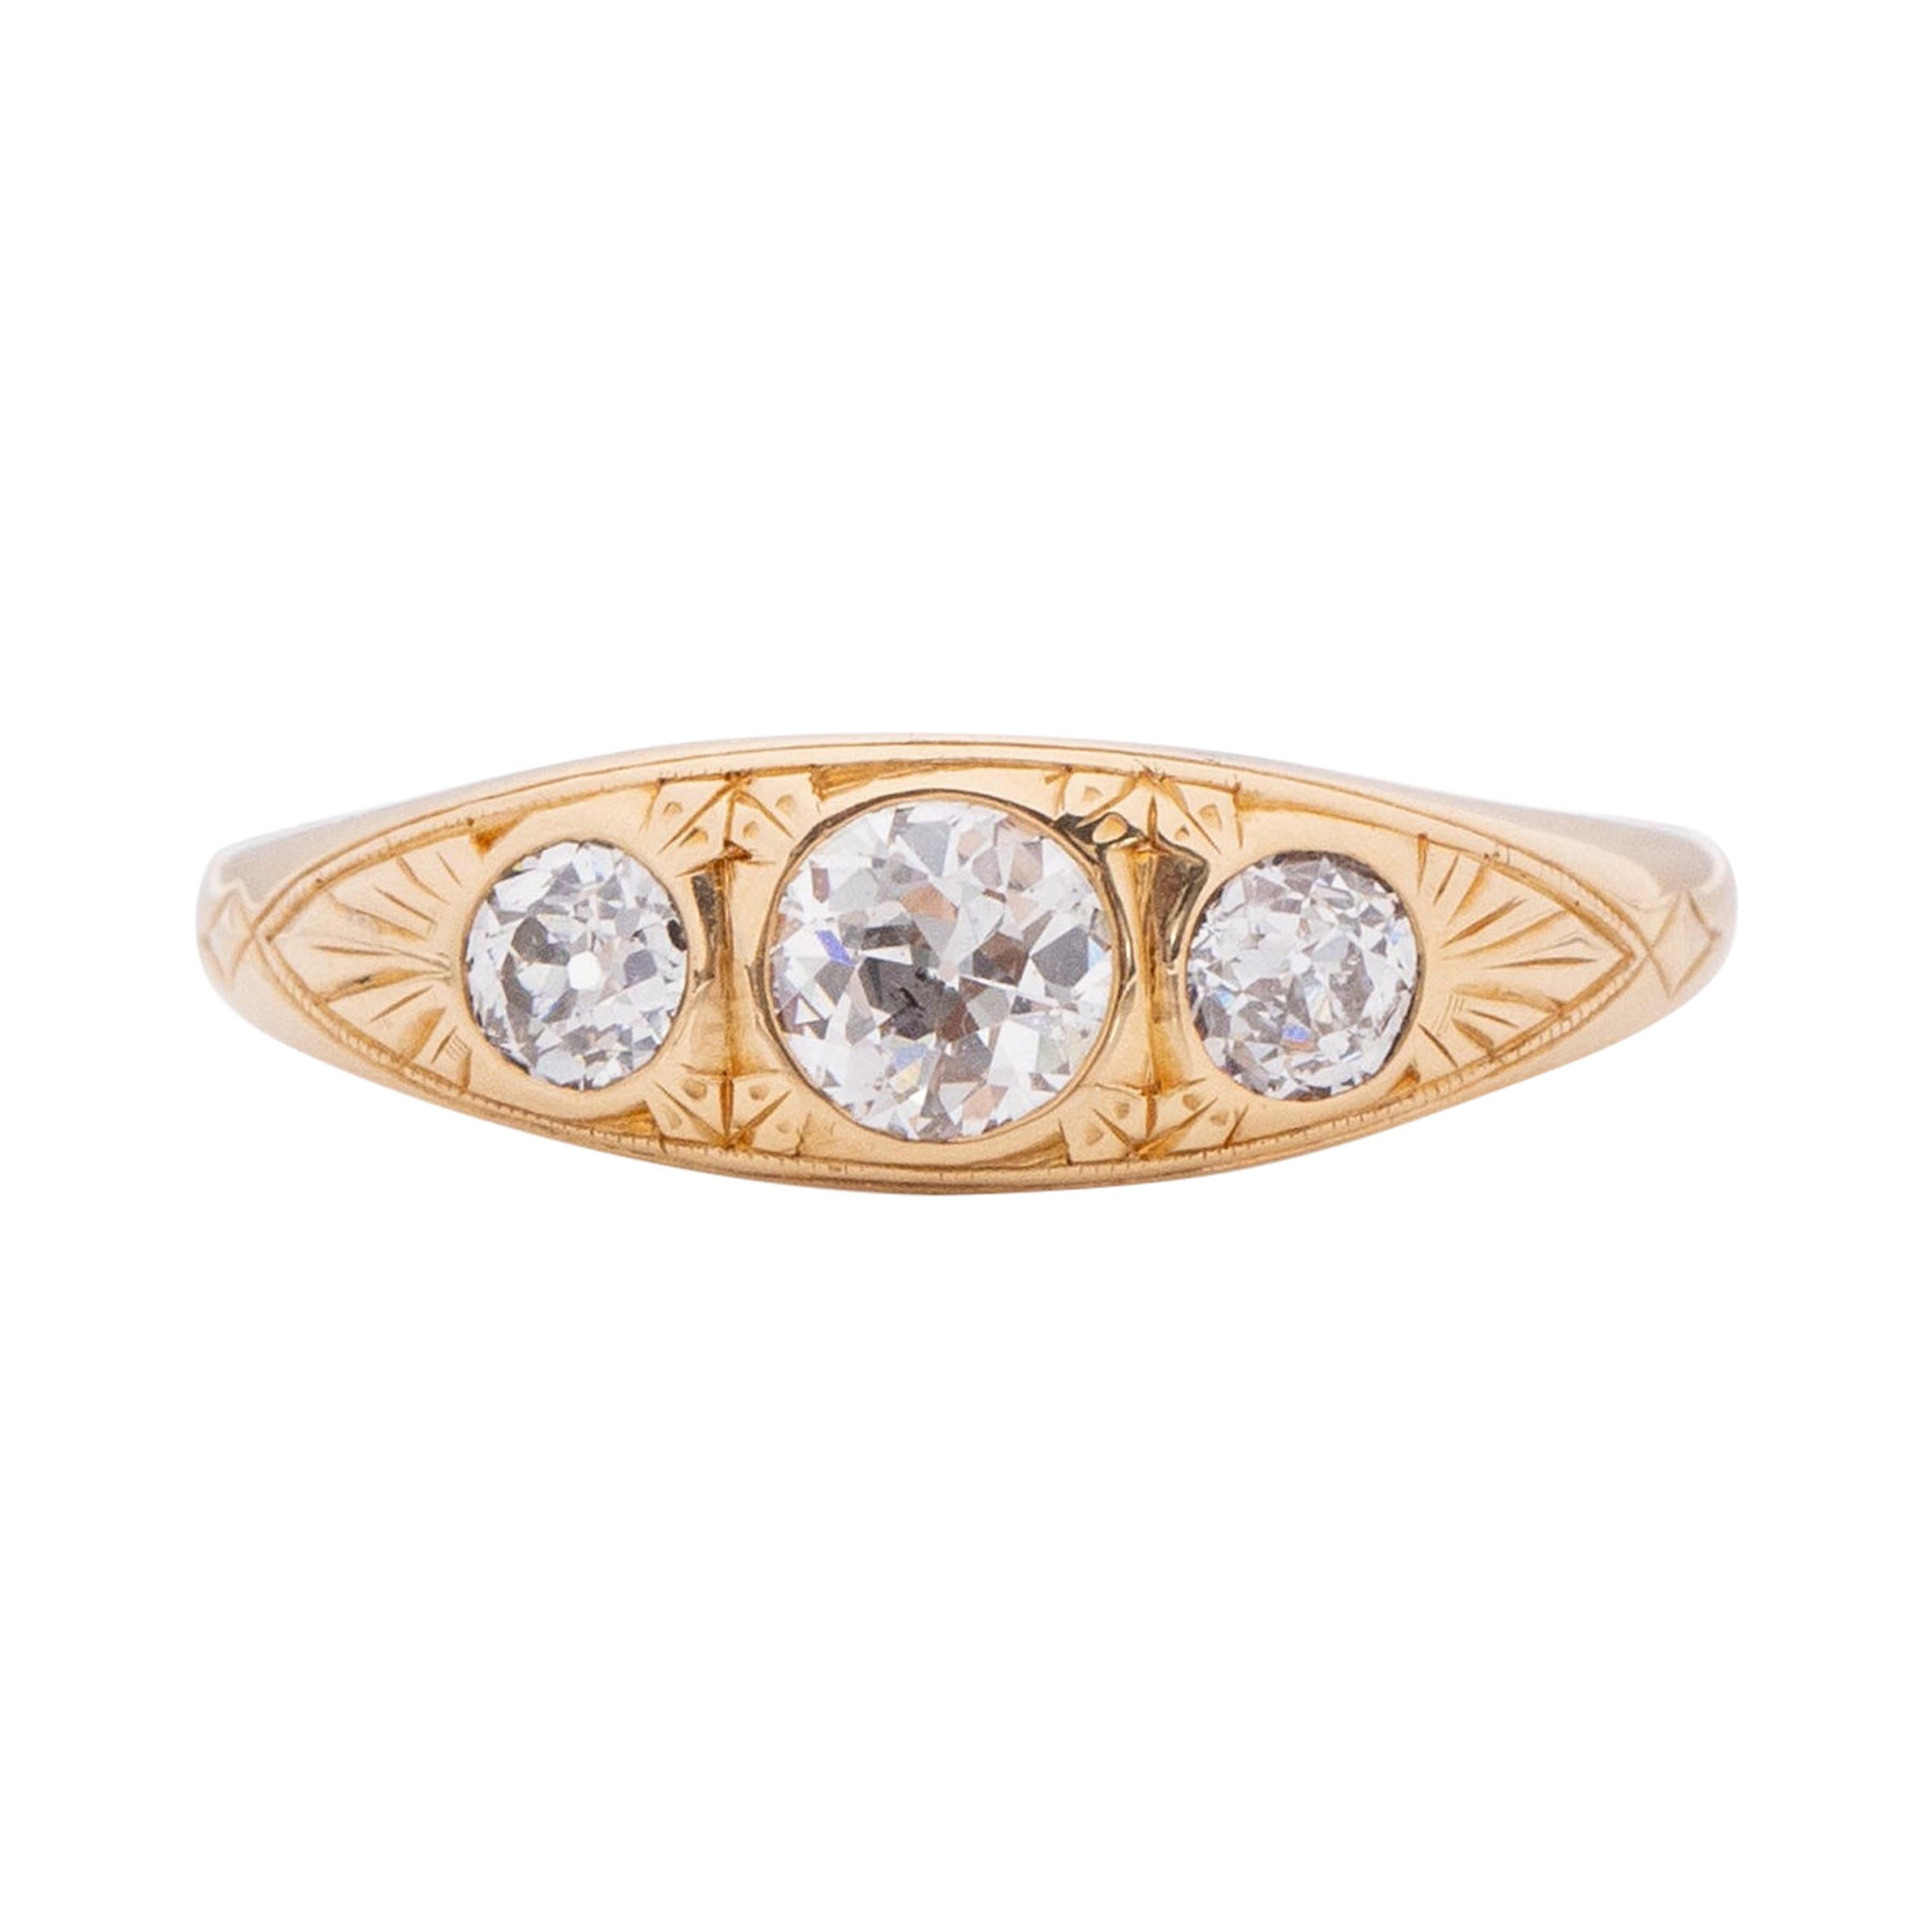 .75 Carat Total Weight Edwardian Diamond 18 Karat Yellow Gold Engagement Ring